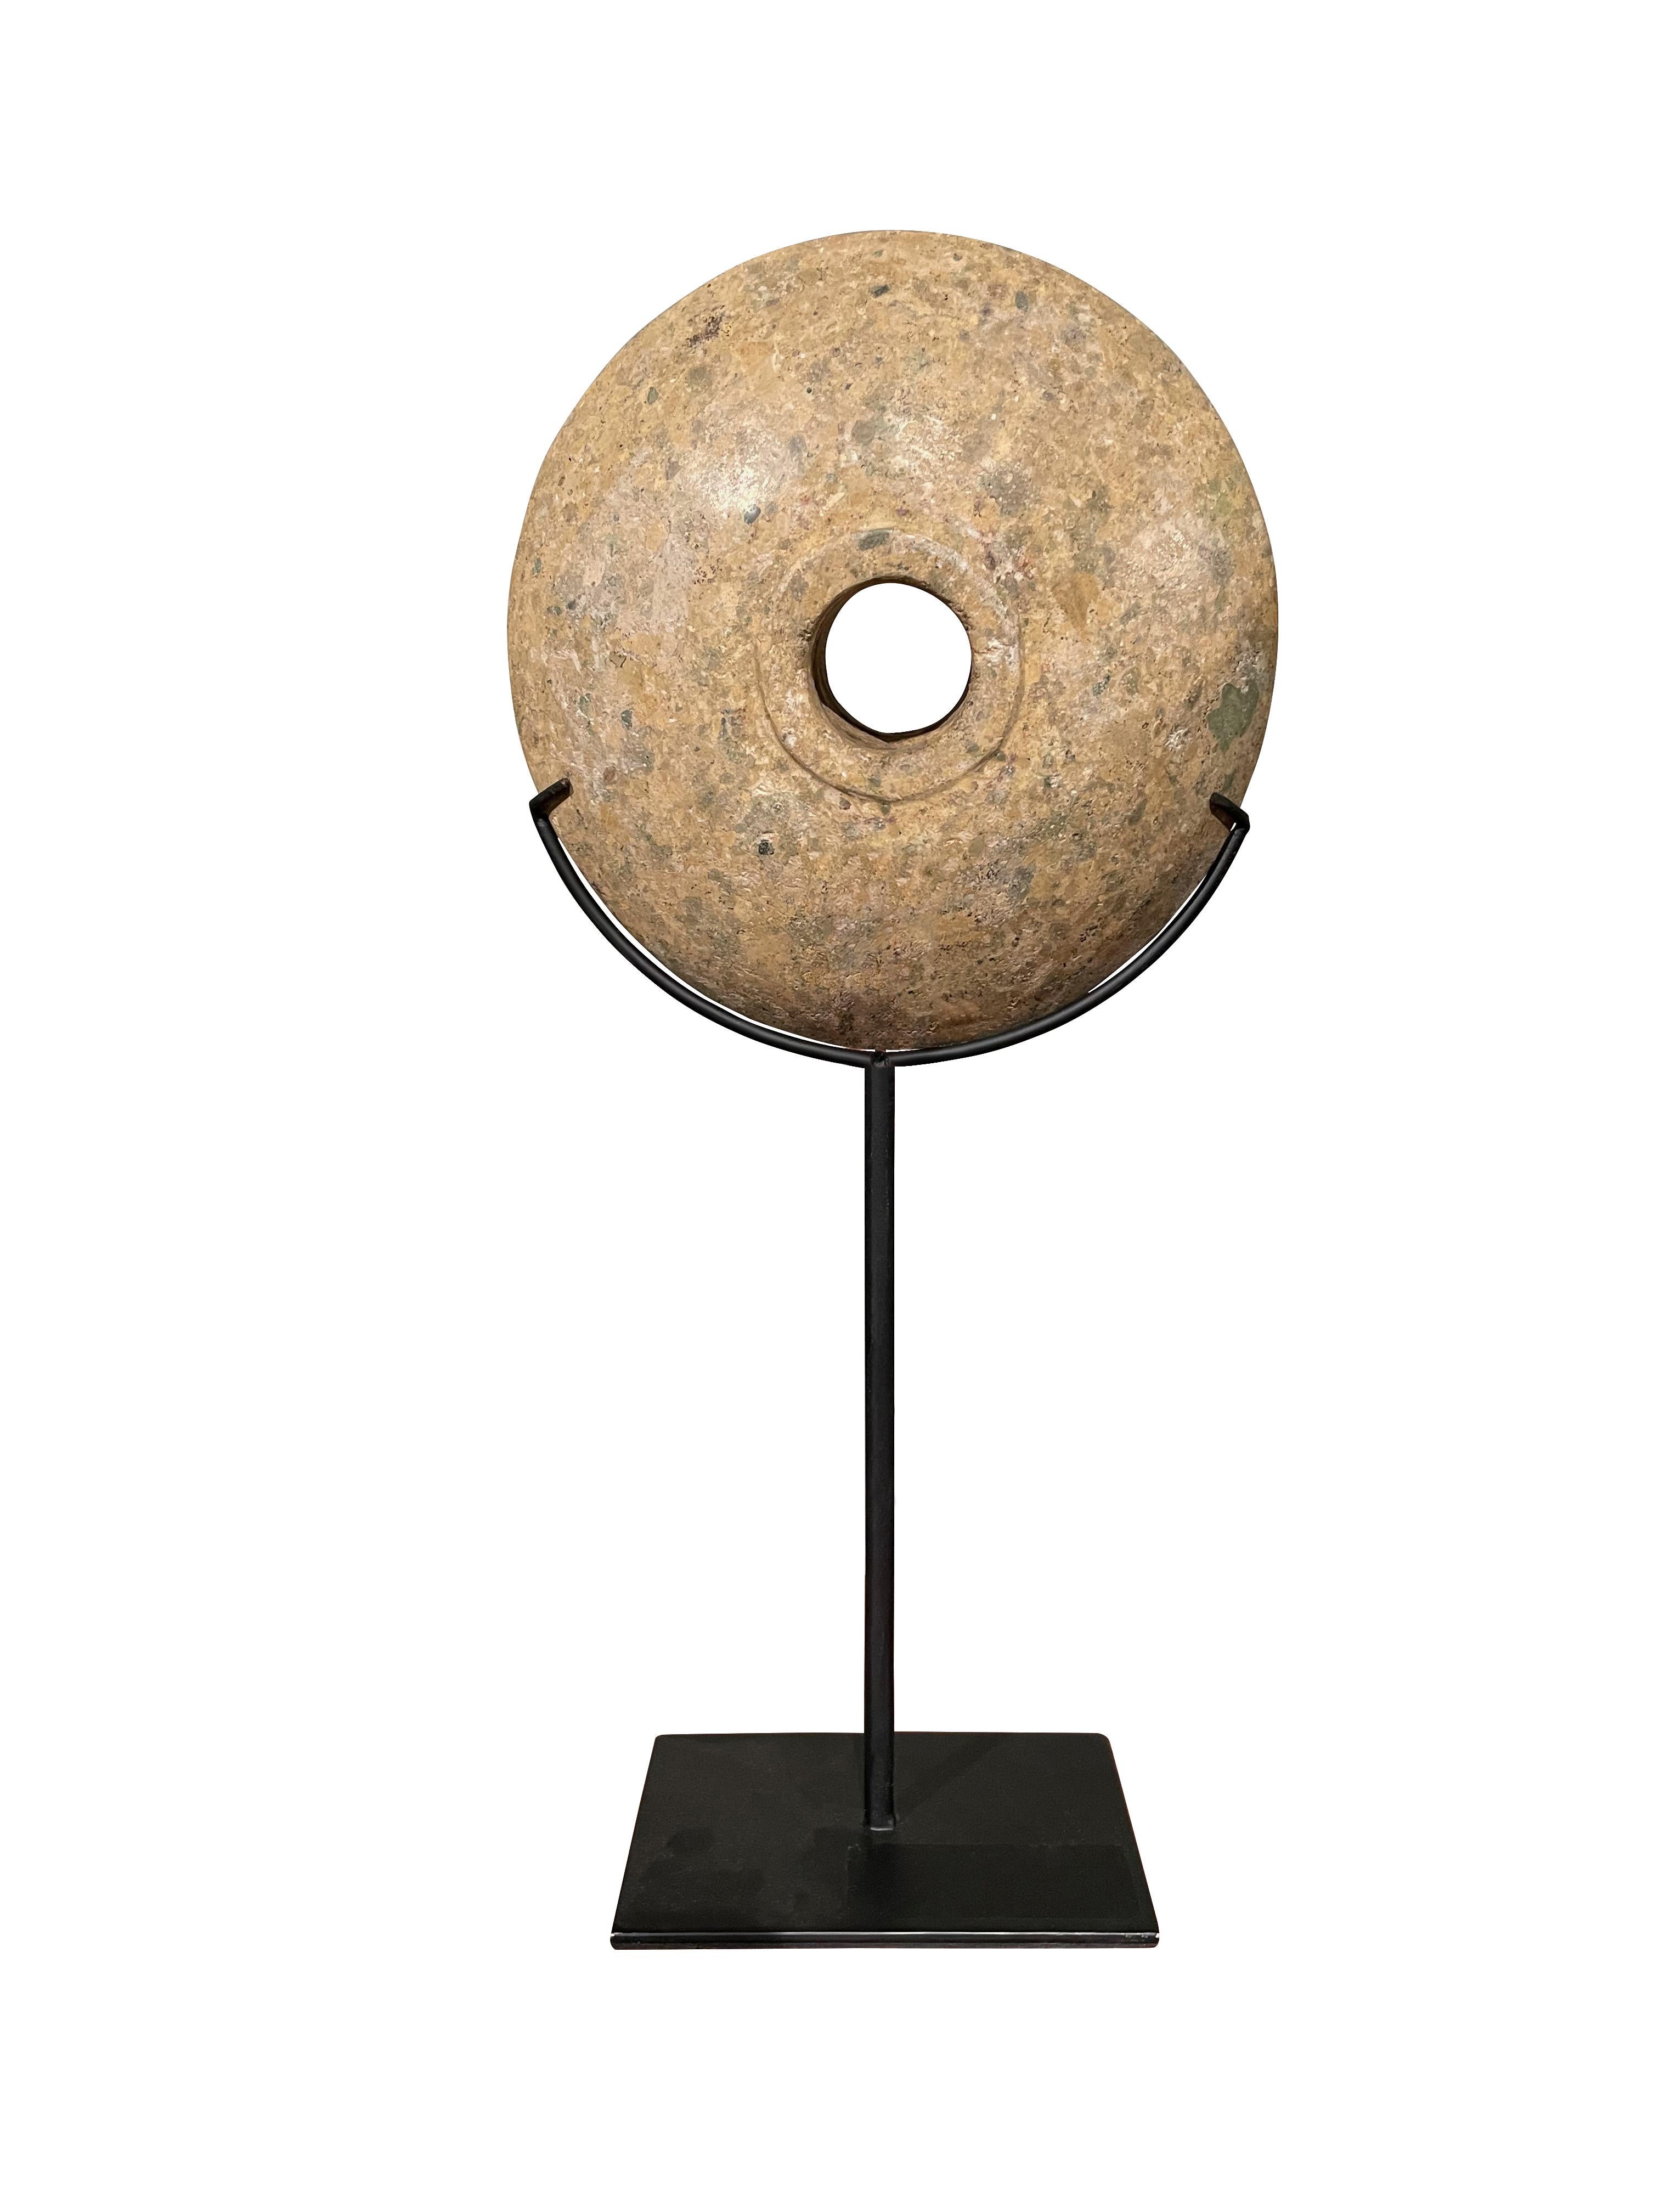 Zeitgenössisches chinesisches Set aus zwei Steinscheiben auf Metallständern.
Geschliffene und glatte Oberfläche.
Ein Stein misst 6